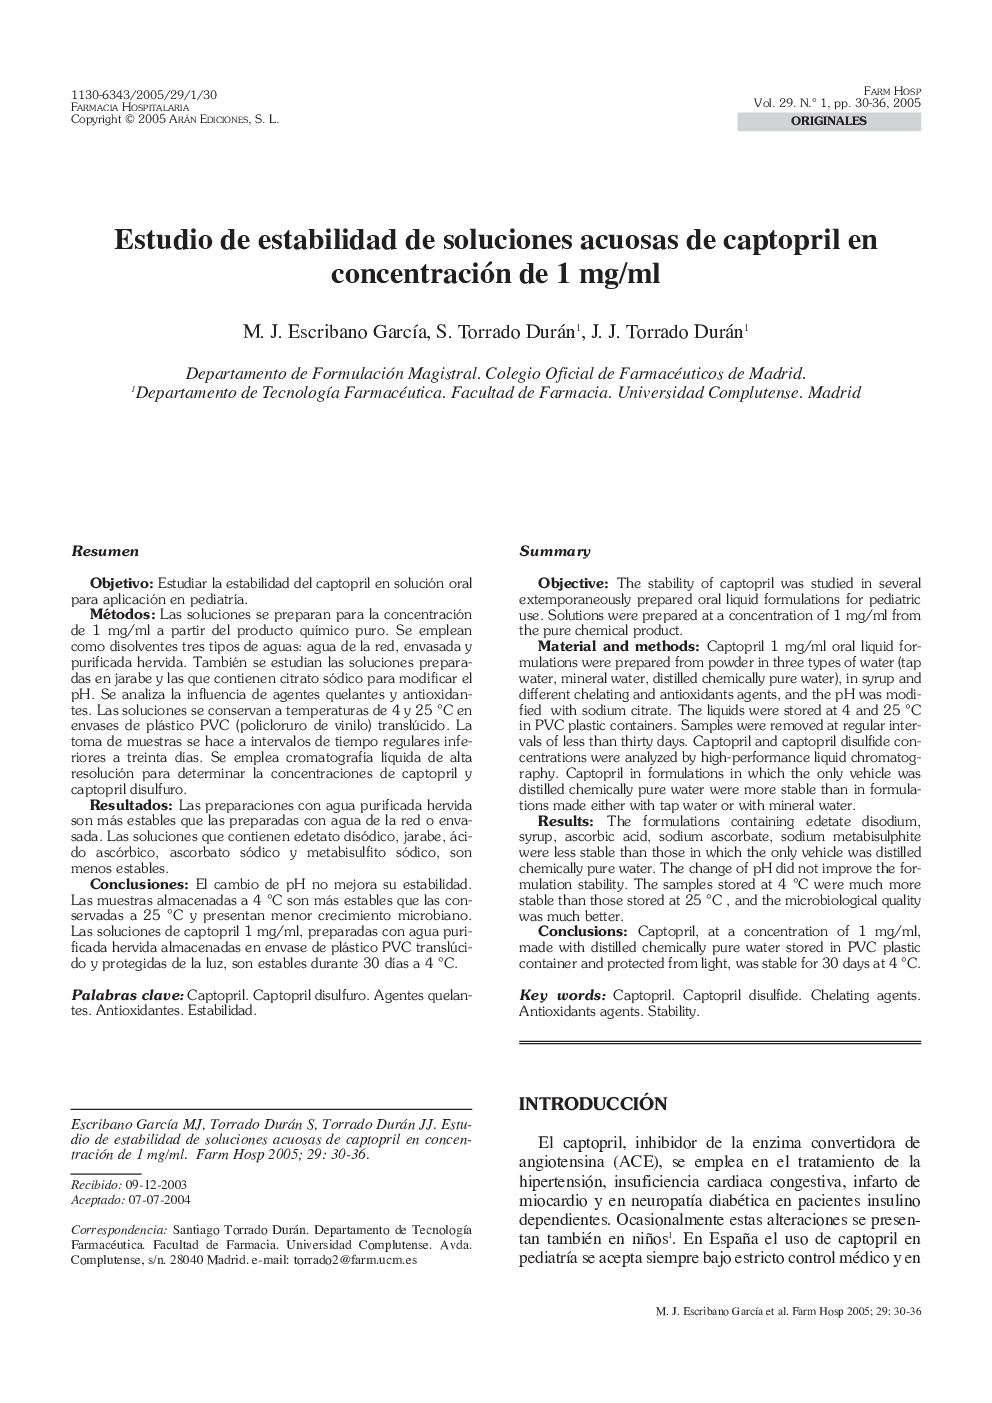 Estudio de estabilidad de soluciones acuosas de captopril en concentración de 1 mg/ml